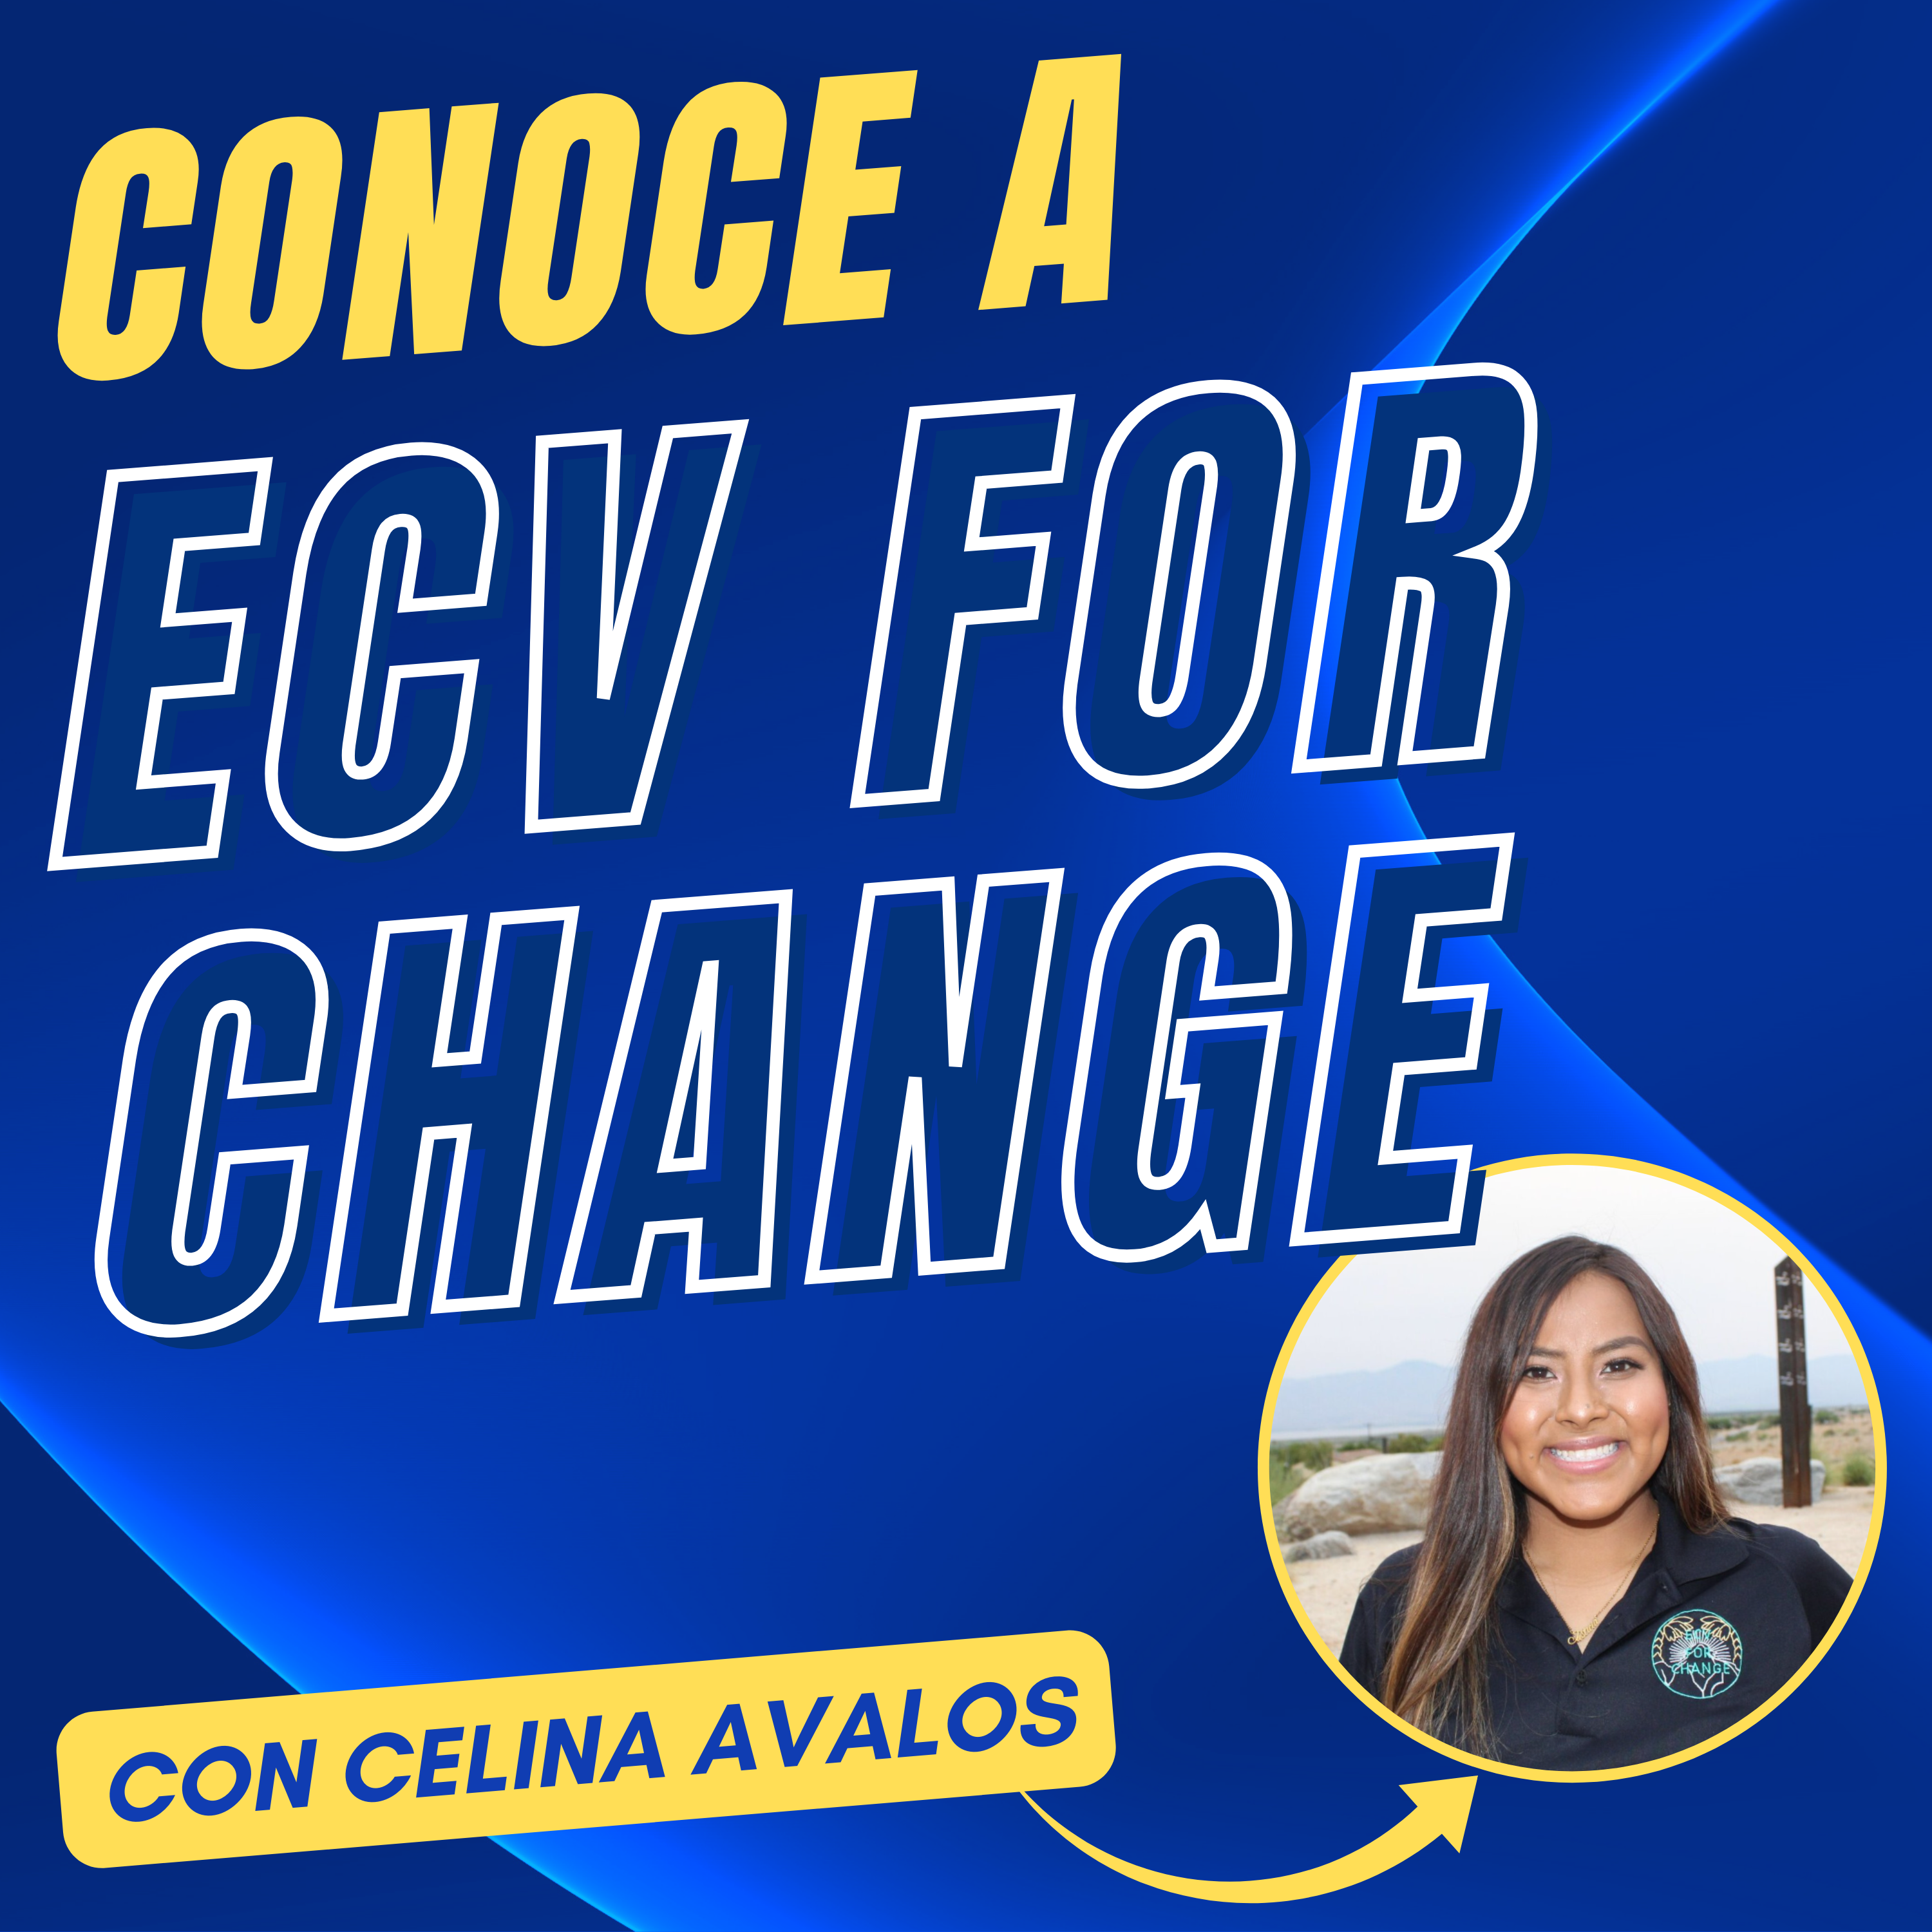 Lucha por la Equidad: Conociendo a Celina Avalos de ECV for Change